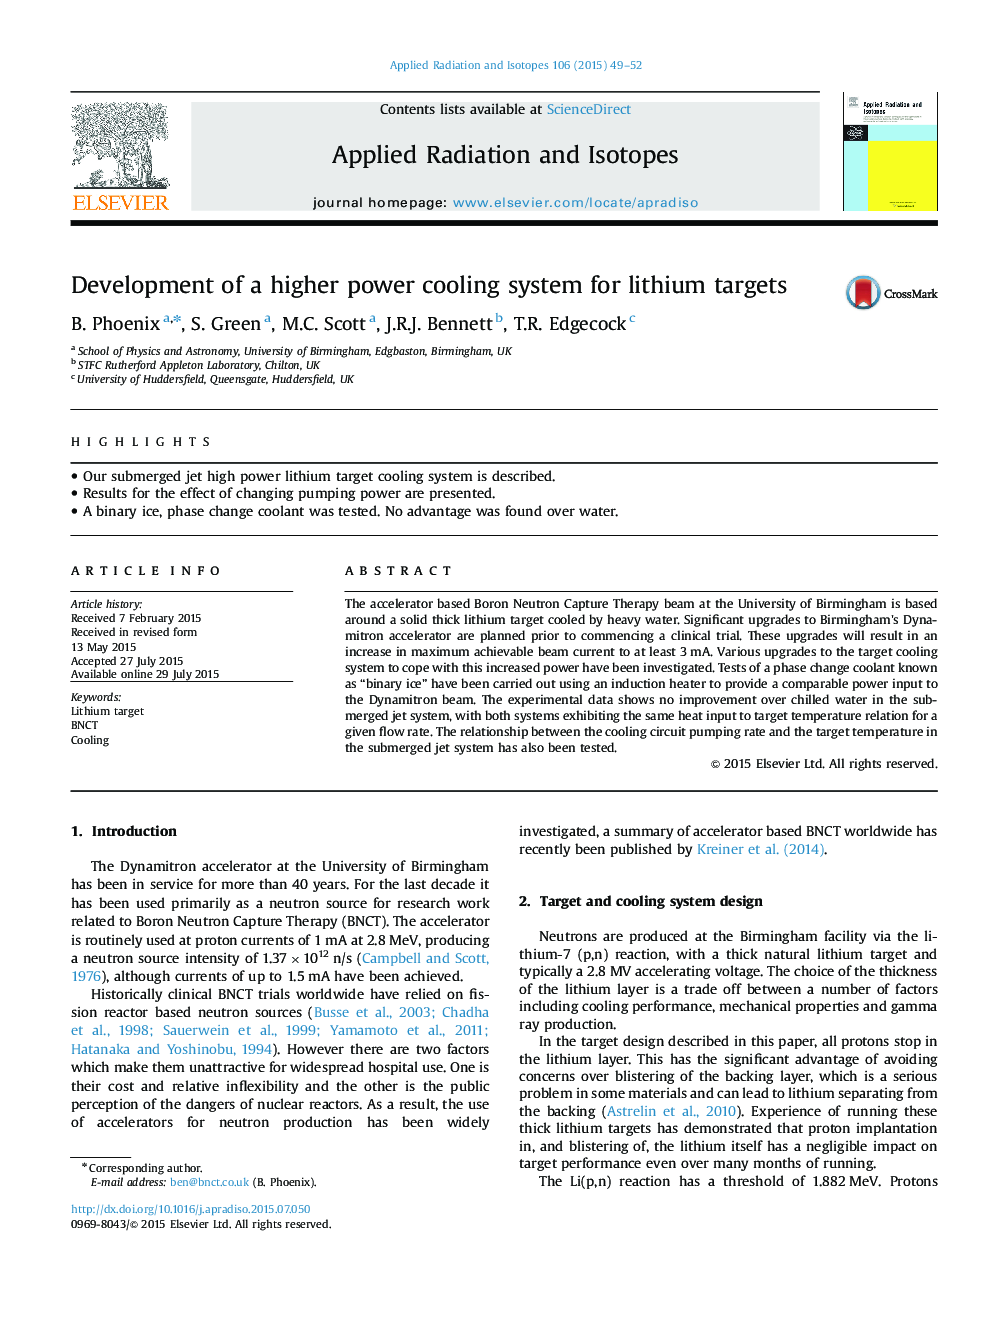 توسعه یک سیستم خنک کننده قدرت بالا برای اهداف لیتیوم 